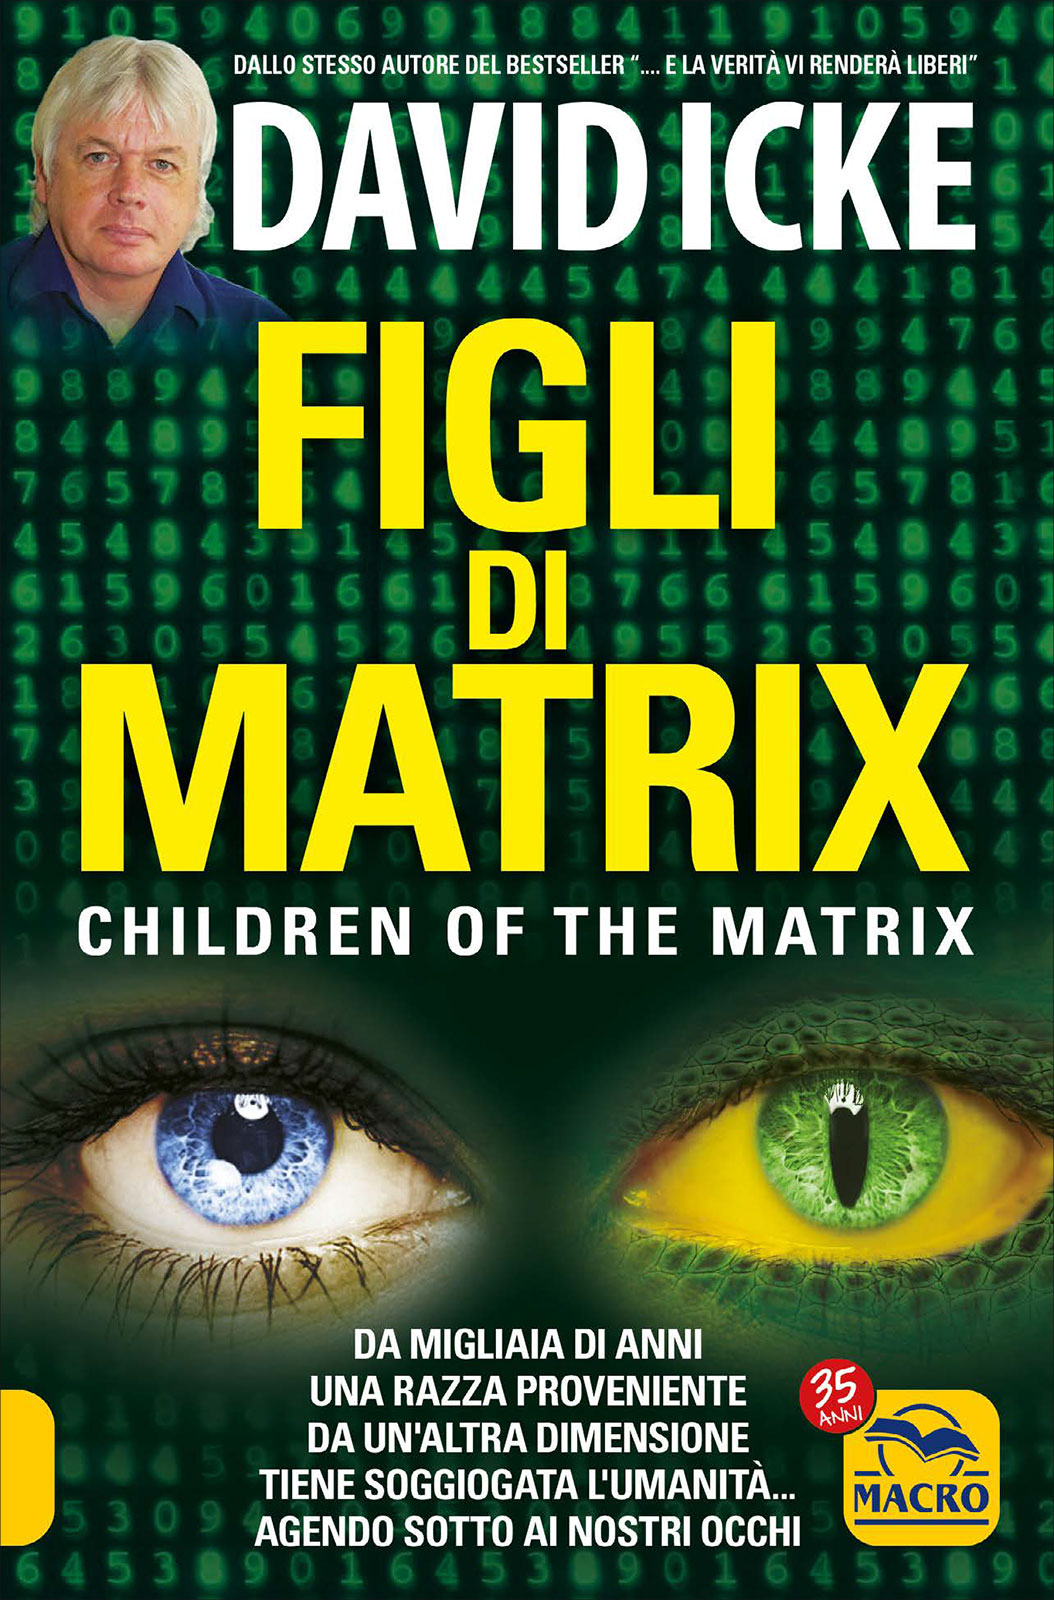 David Icke: “ Figli di Matrix”